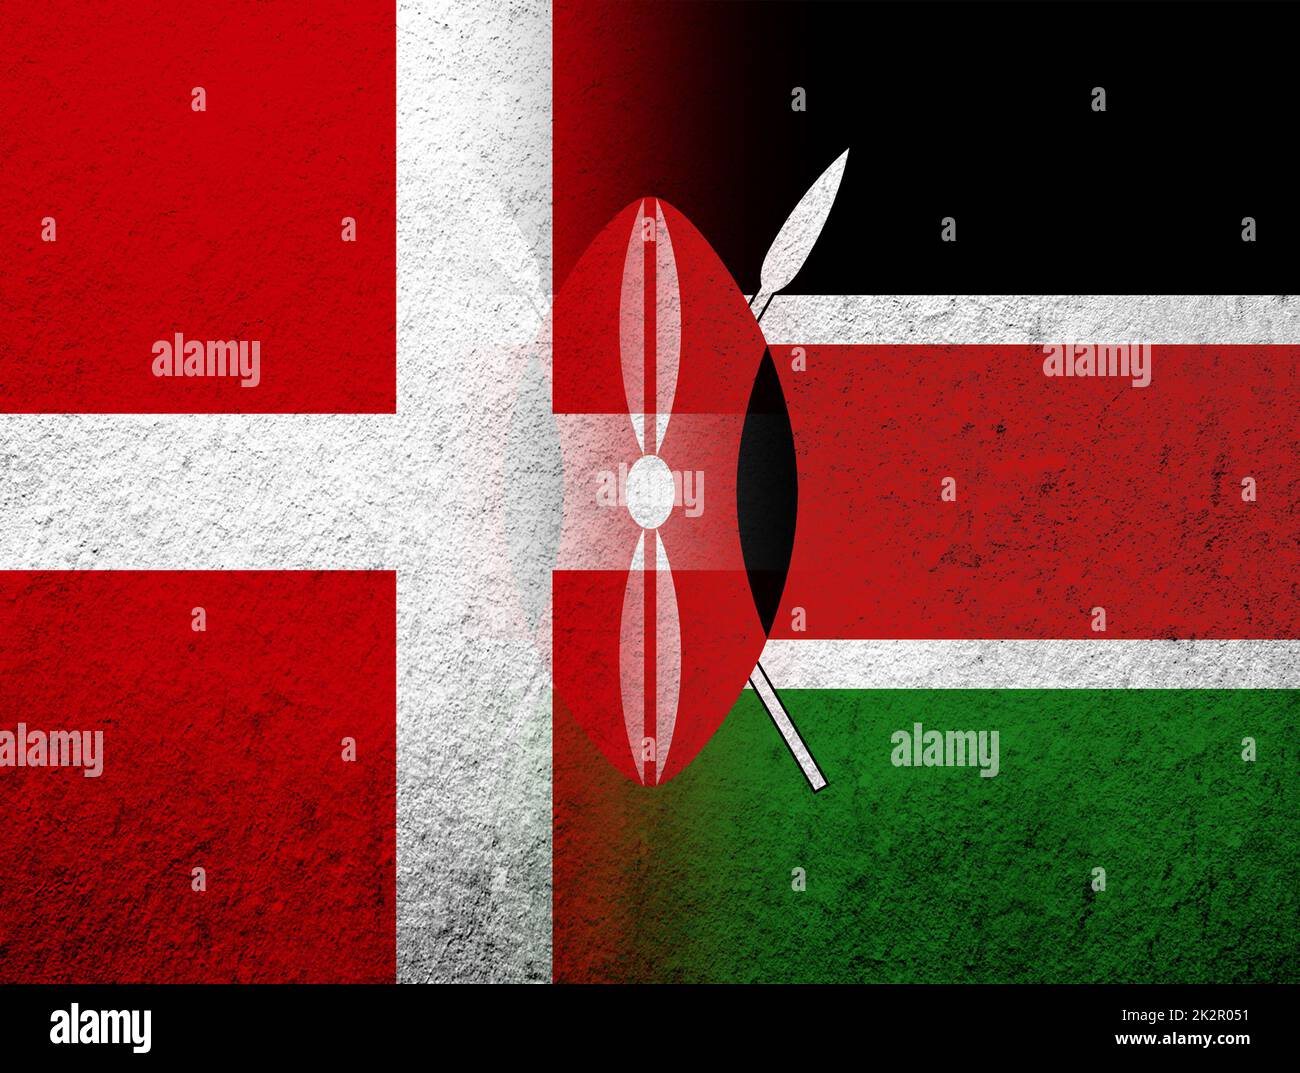 Das Königreich Dänemark Nationalflagge mit der Republik Kenia Nationalflagge. Grunge Hintergrund Stockfoto